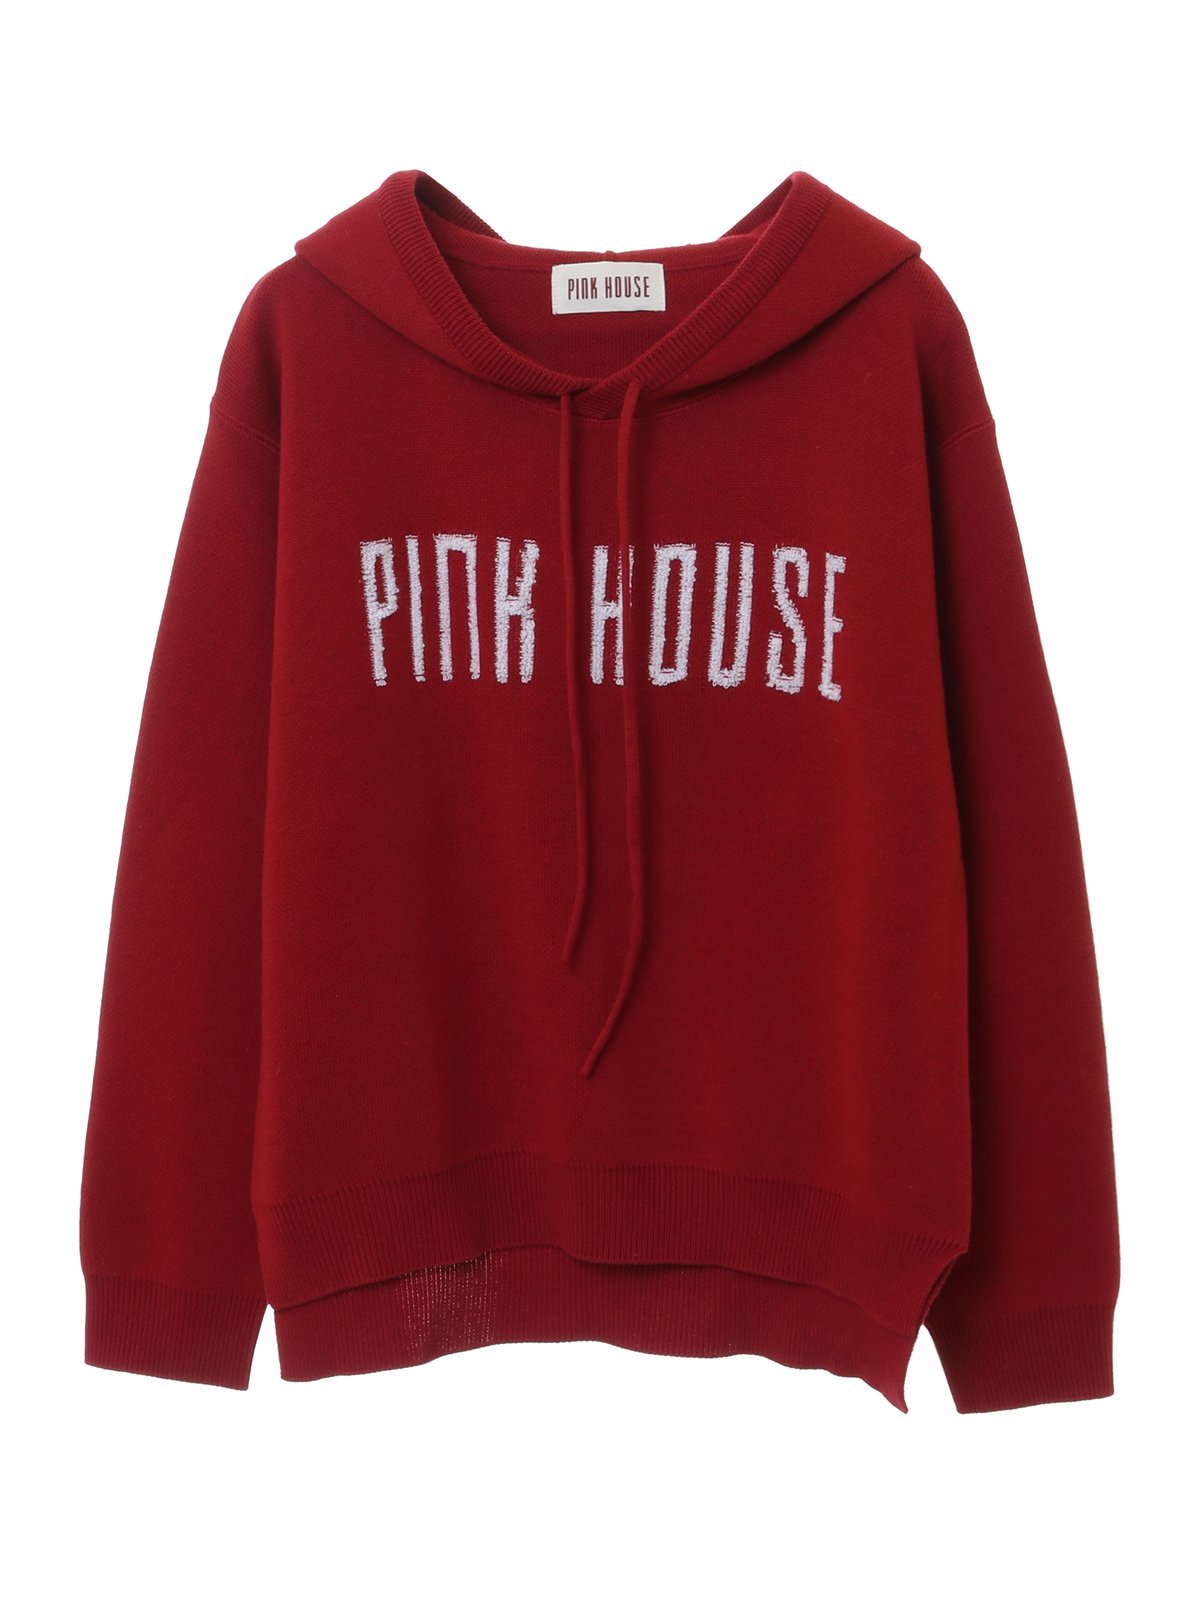 PINK HOUSE ロゴ入りニットパーカー ピンクハウス トップス ニット レッド【送料無料】